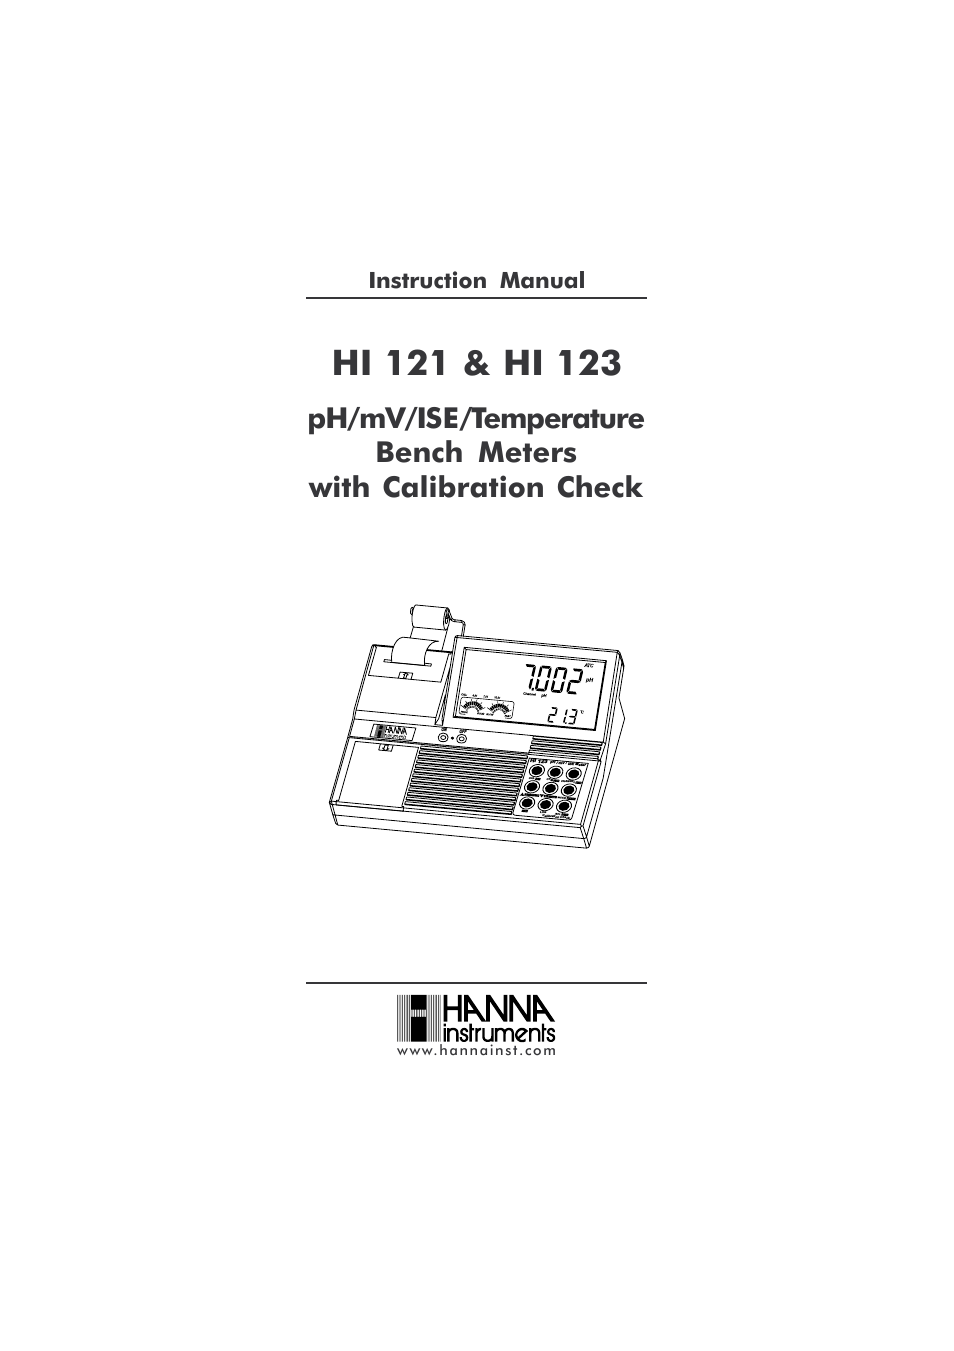 HI 123